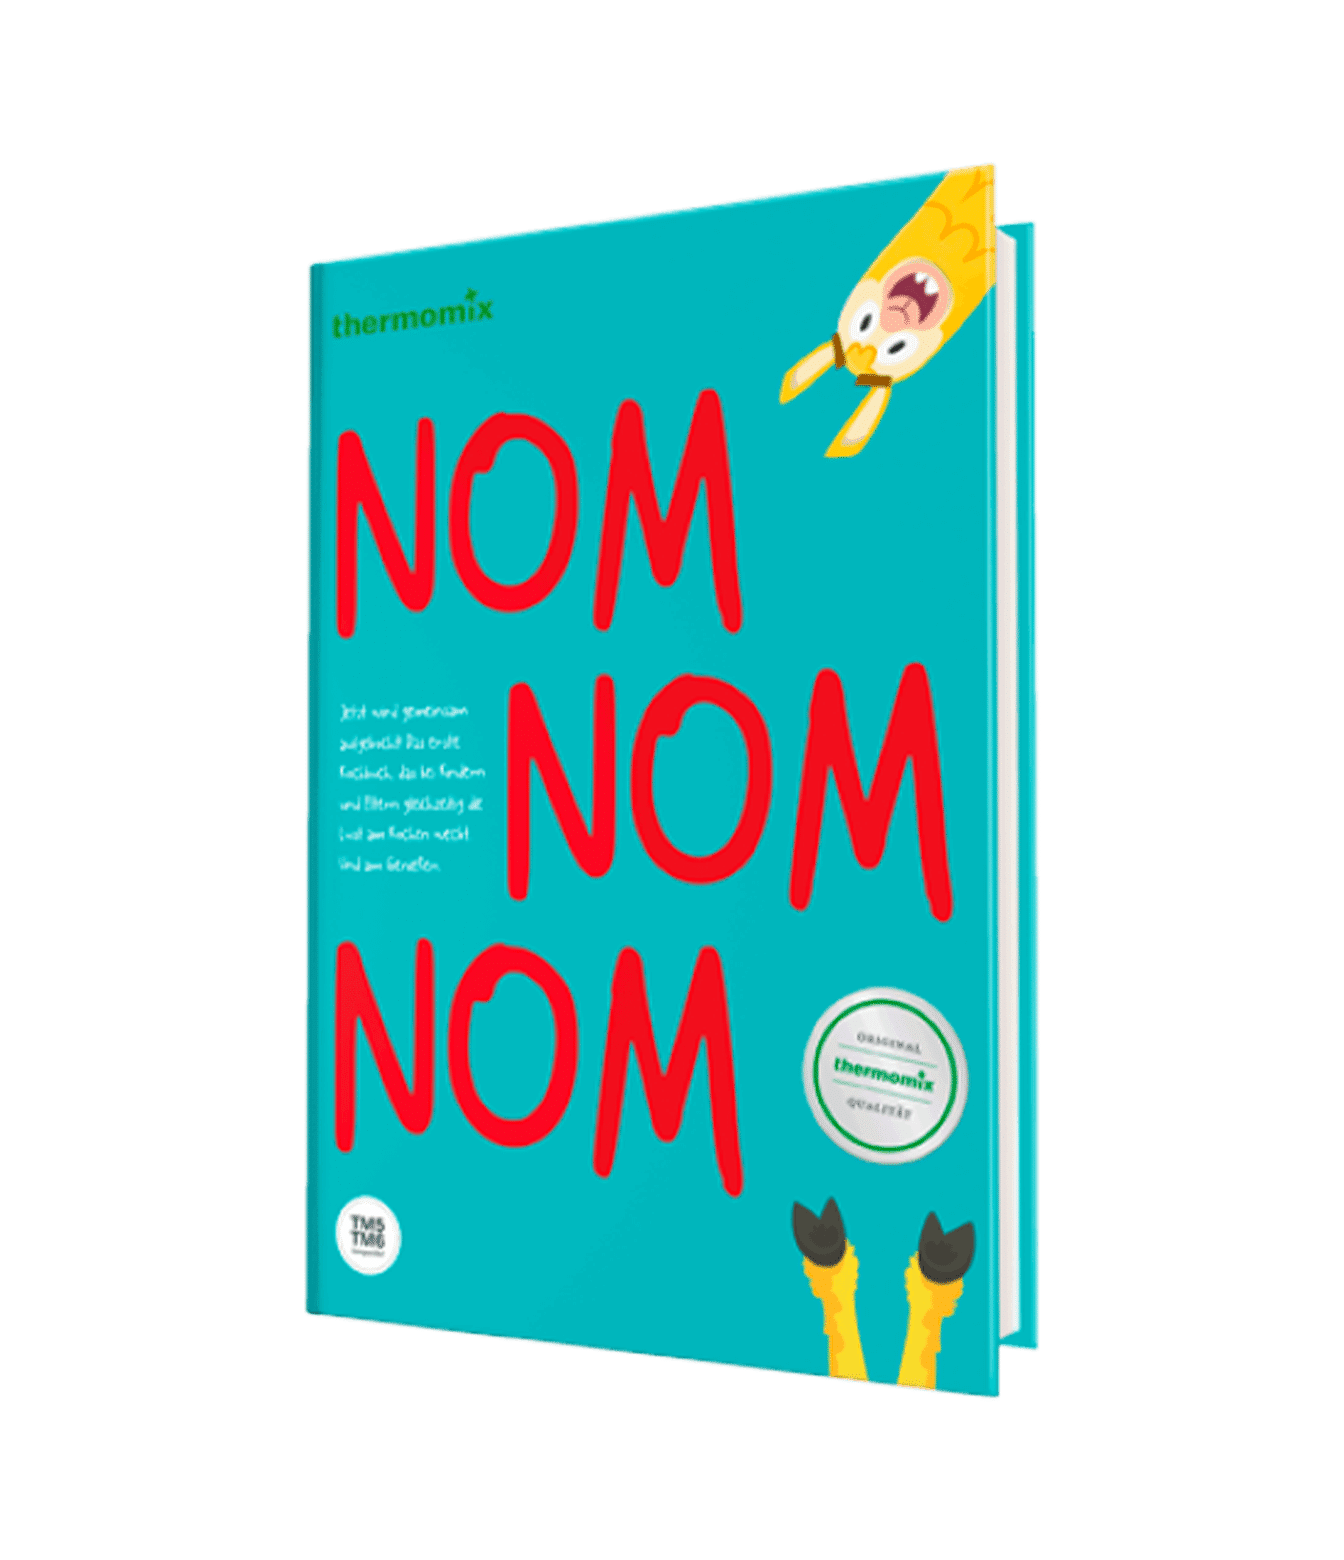 Vorwerk Thermomix® Kochbuch „Nom Nom Nom“